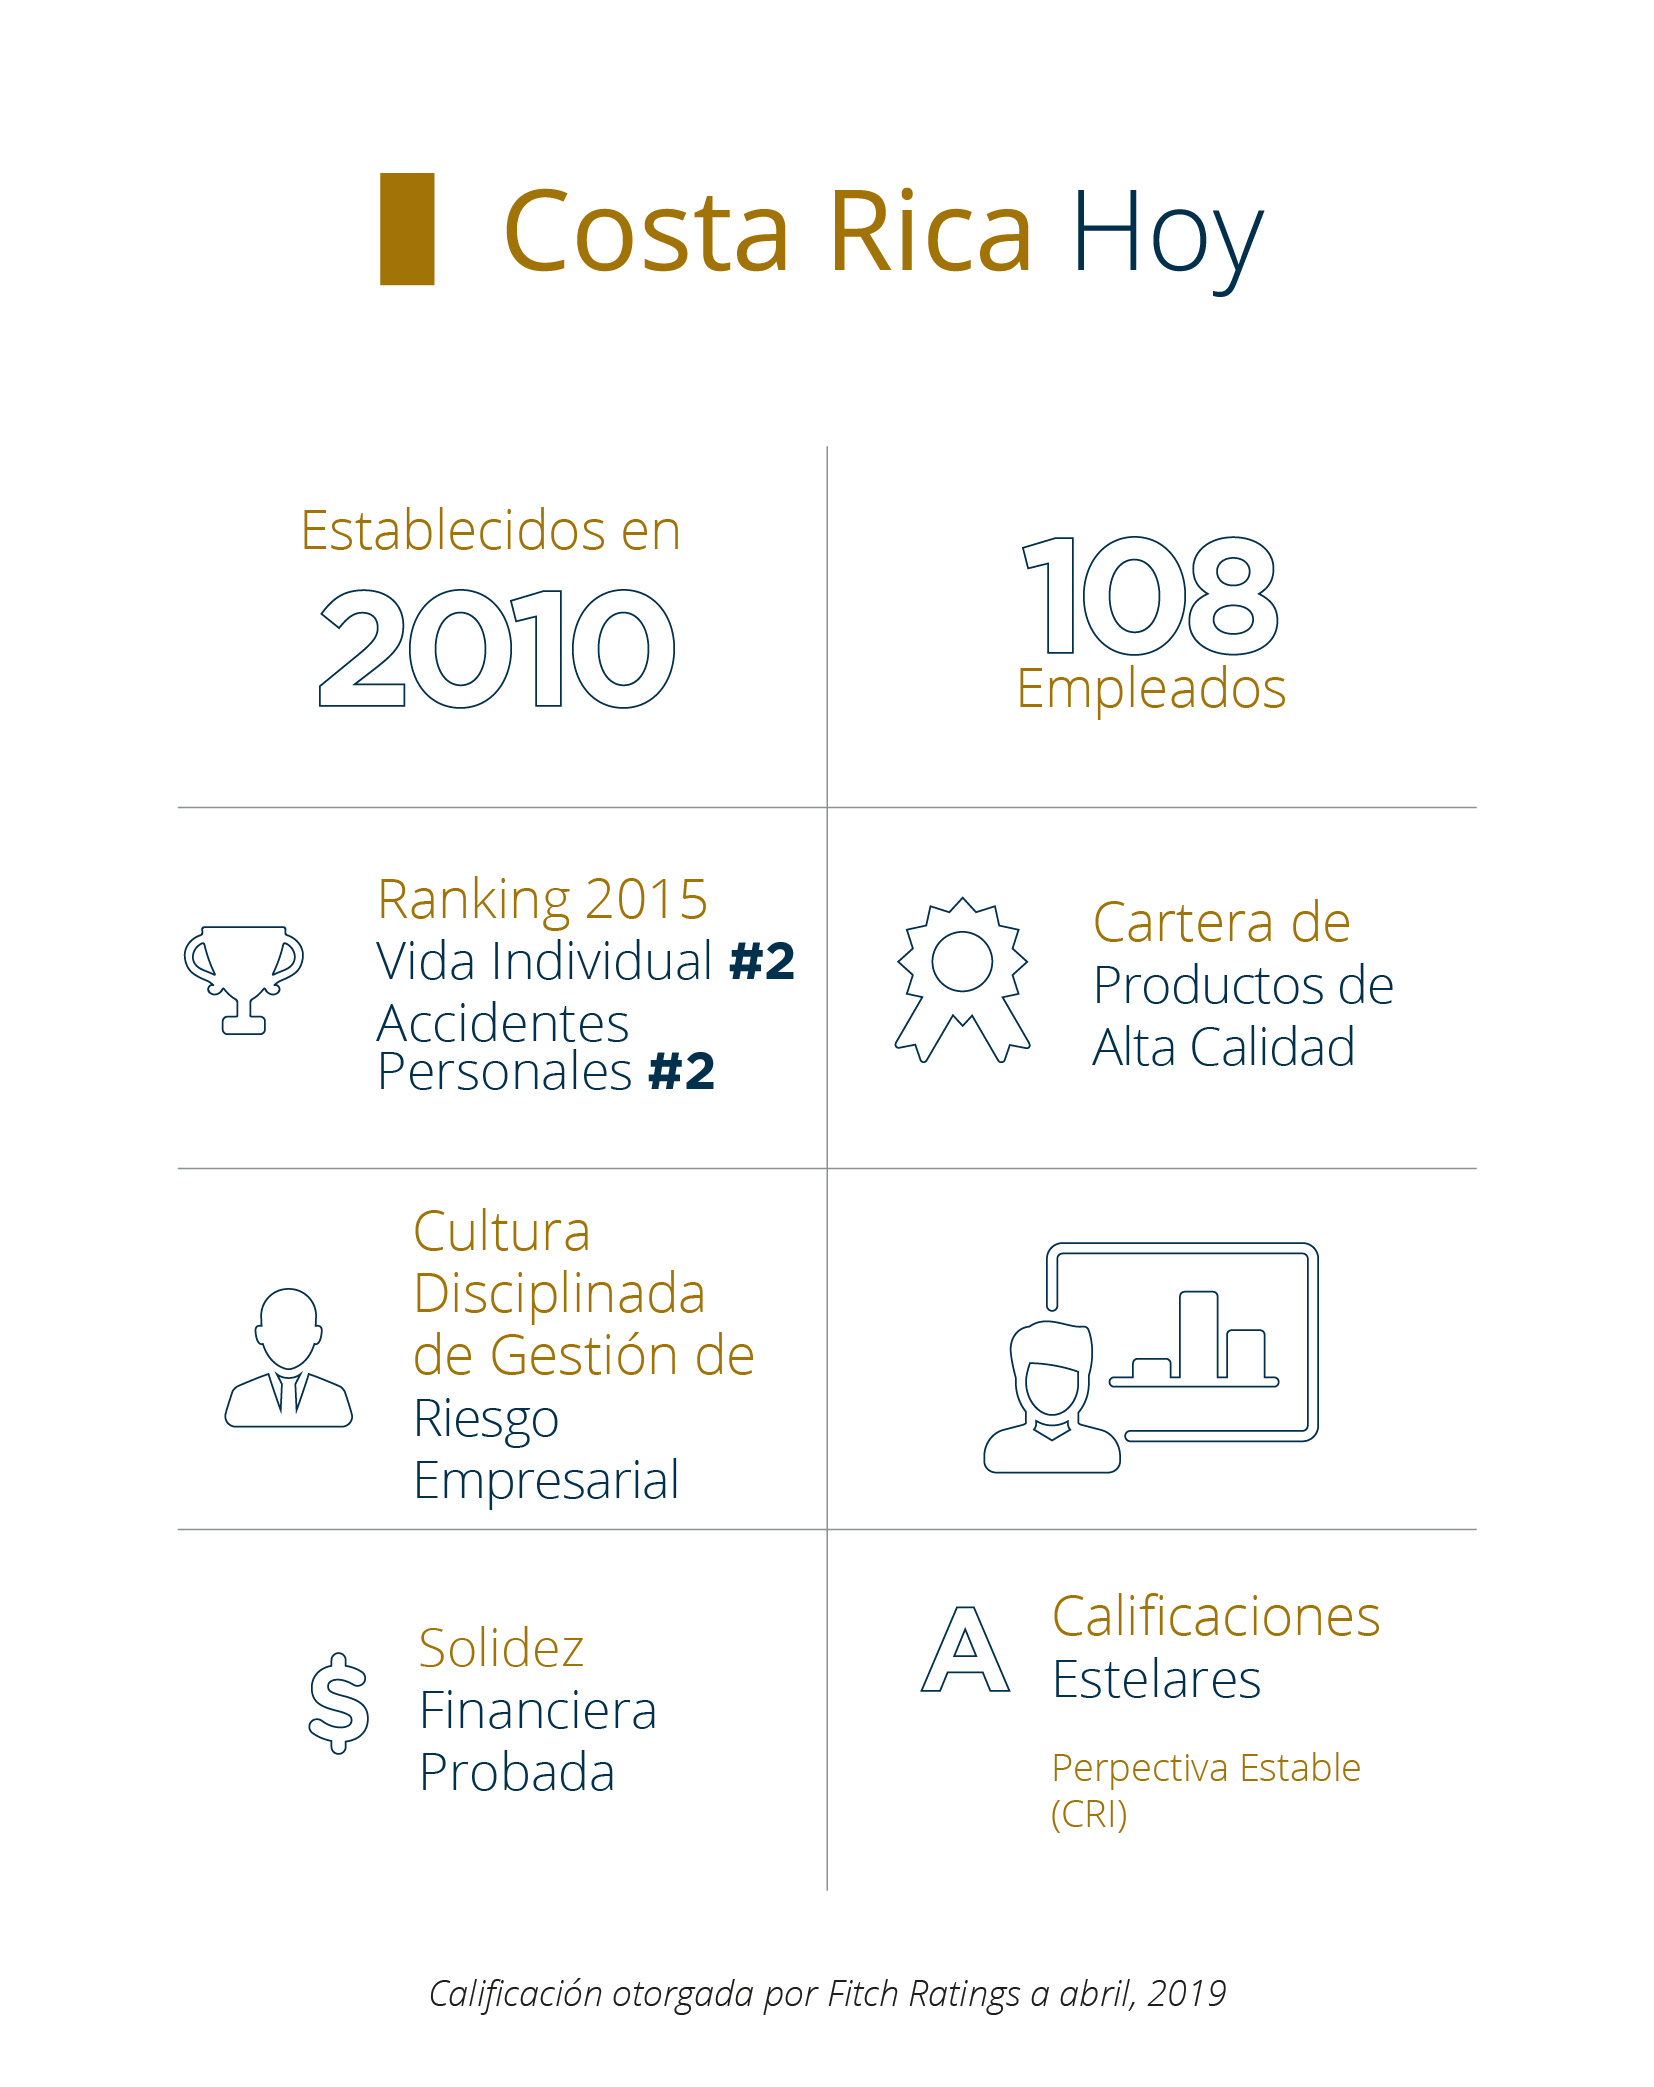 Sobre Pan-American Life Insurance Group de Costa Rica